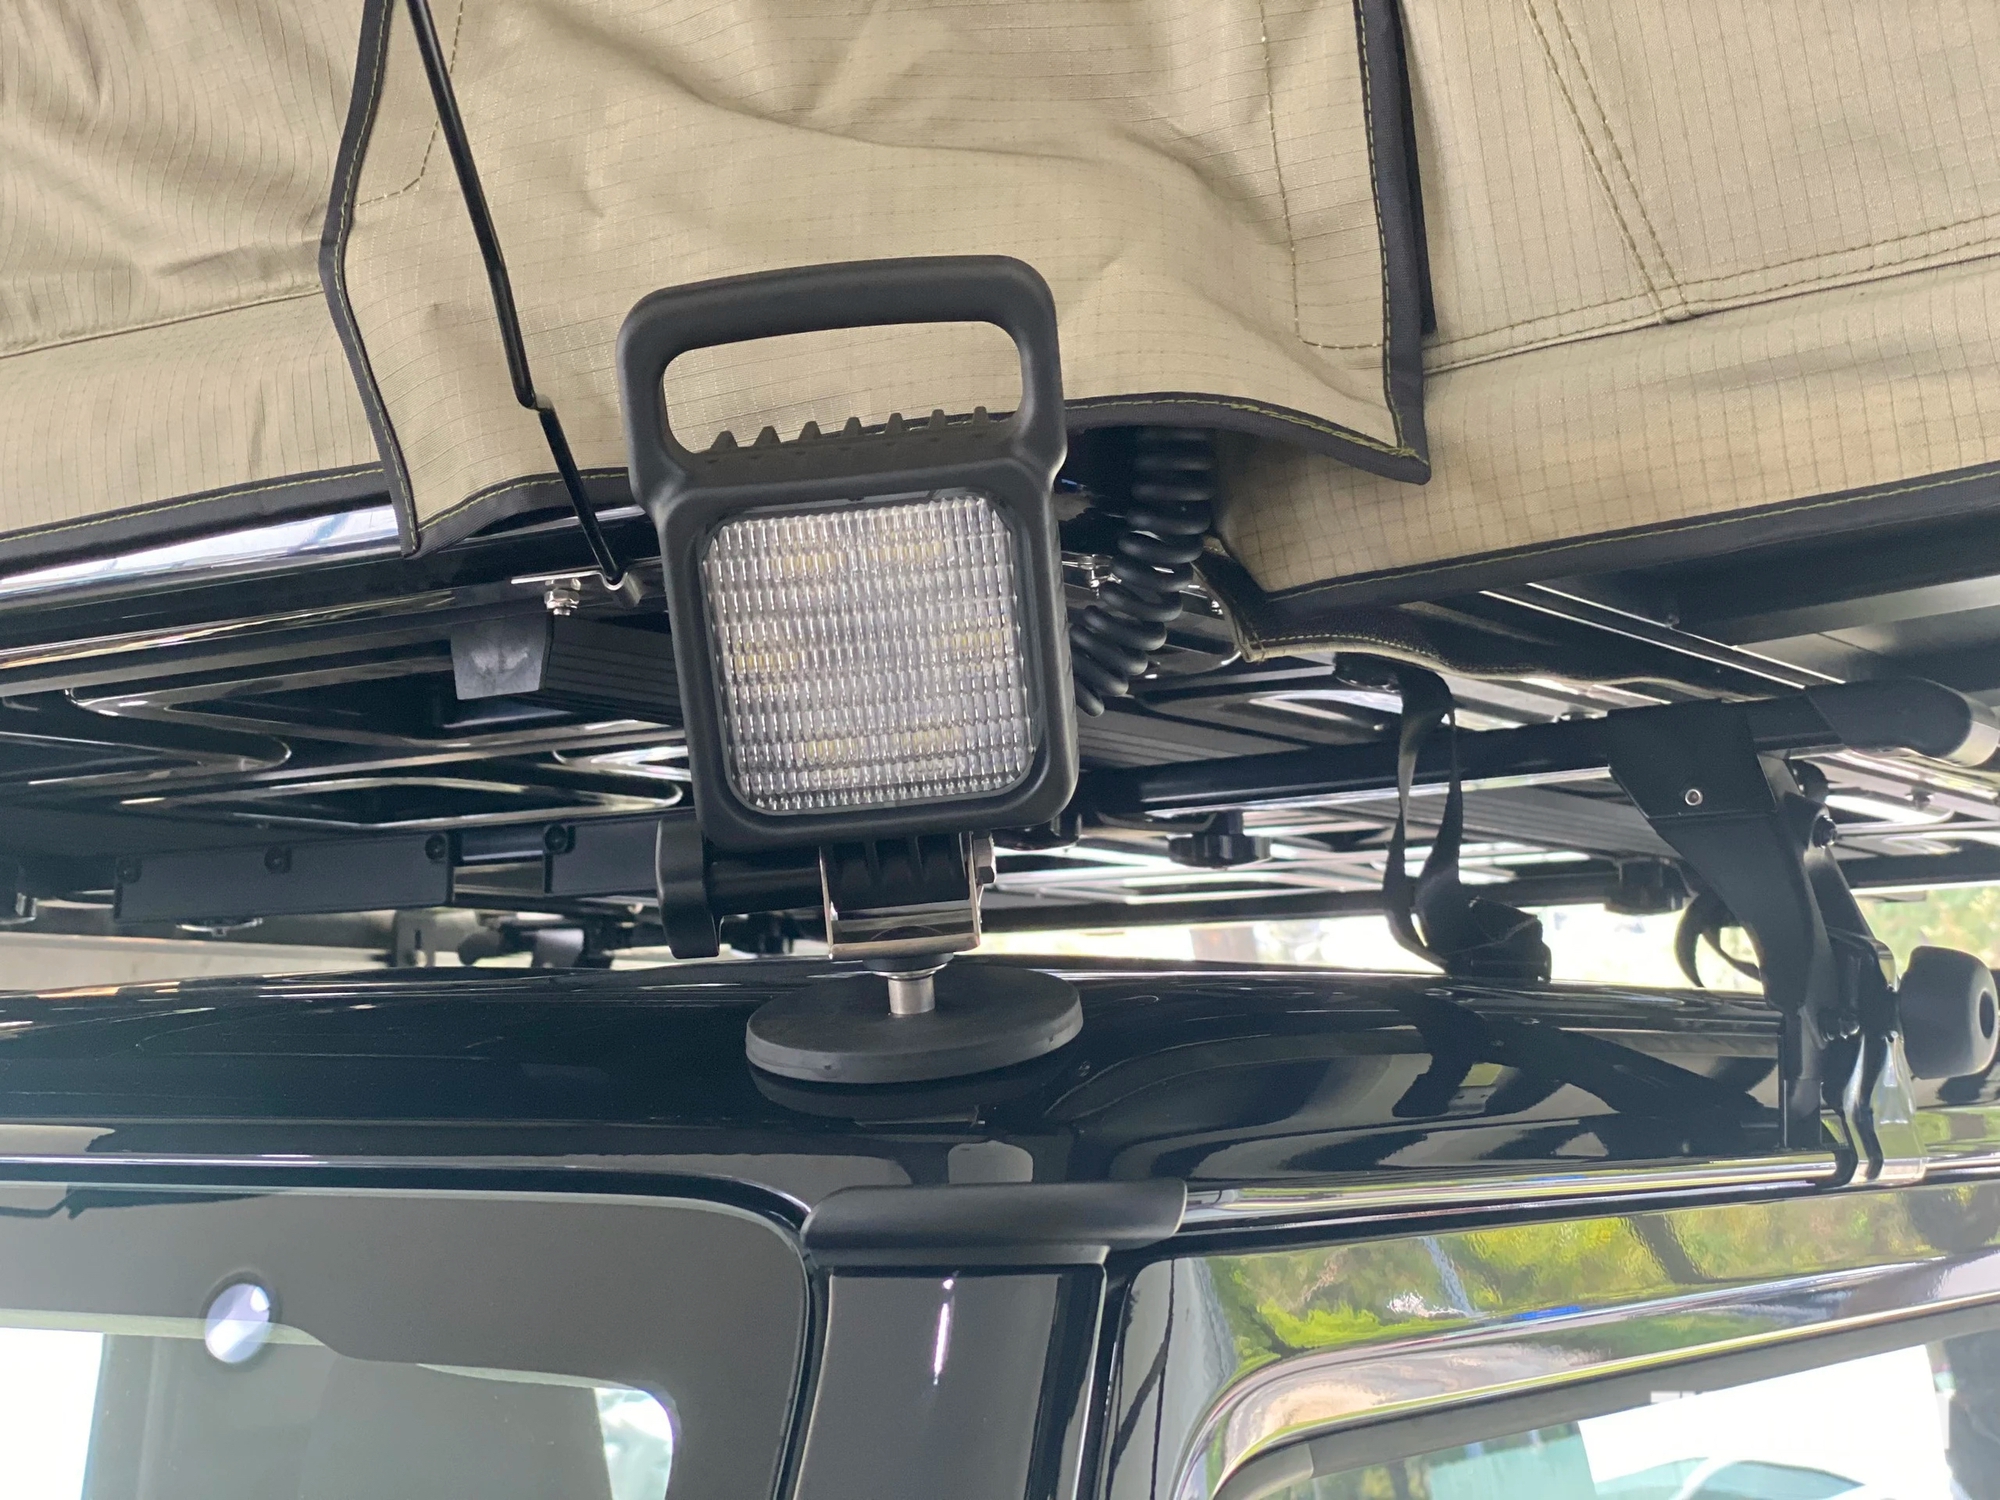 Trên nóc xe có gắn thêm đèn chiếu sáng LED để sử dụng trong những nơi ánh sáng yếu hoặc phục vụ cho mục đích cắm trại ở những nơi không có đèn điện.